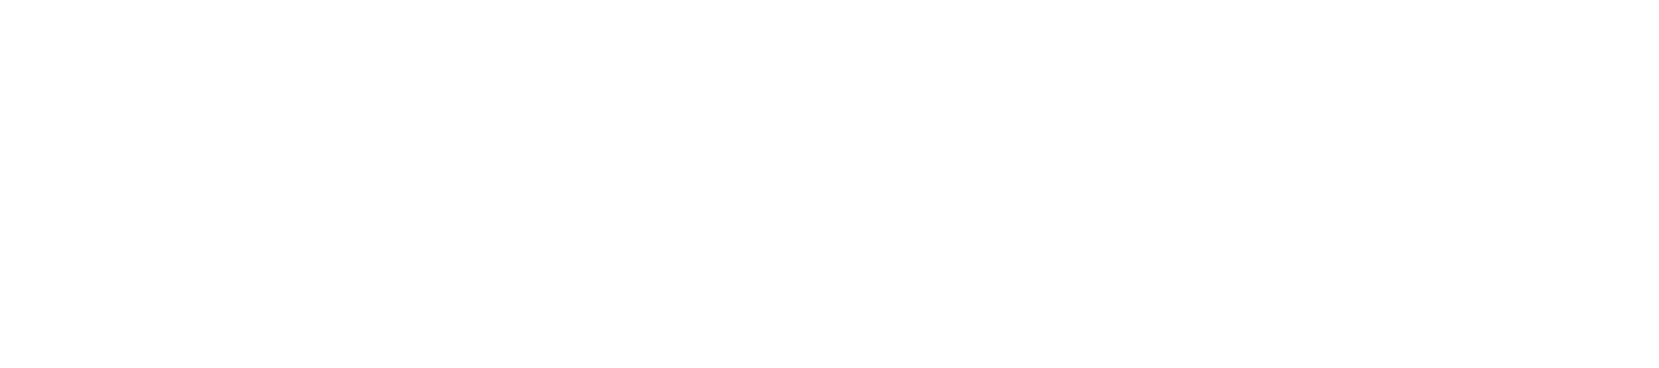 Romeo Power Logo groß für dunkle Hintergründe (transparentes PNG)